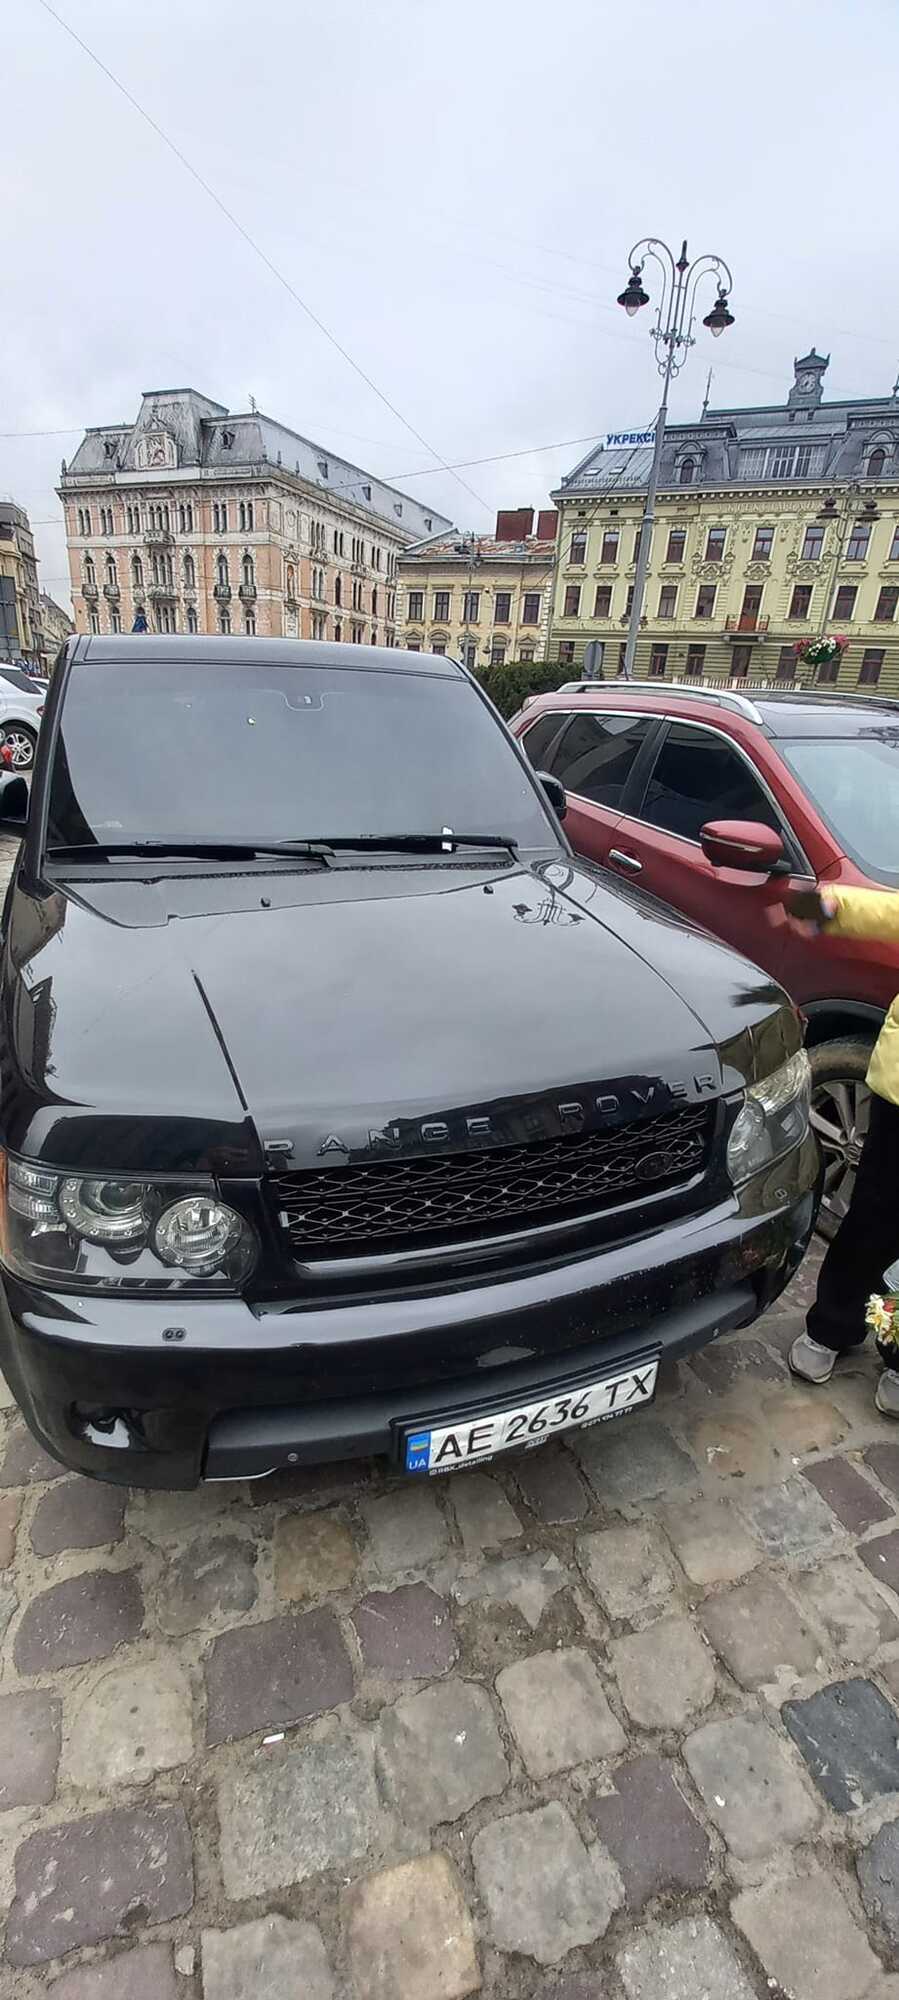 Суд призначив мізерне покарання пасажиру Range Rover, який слухав пісні Лєпса в центрі Львова